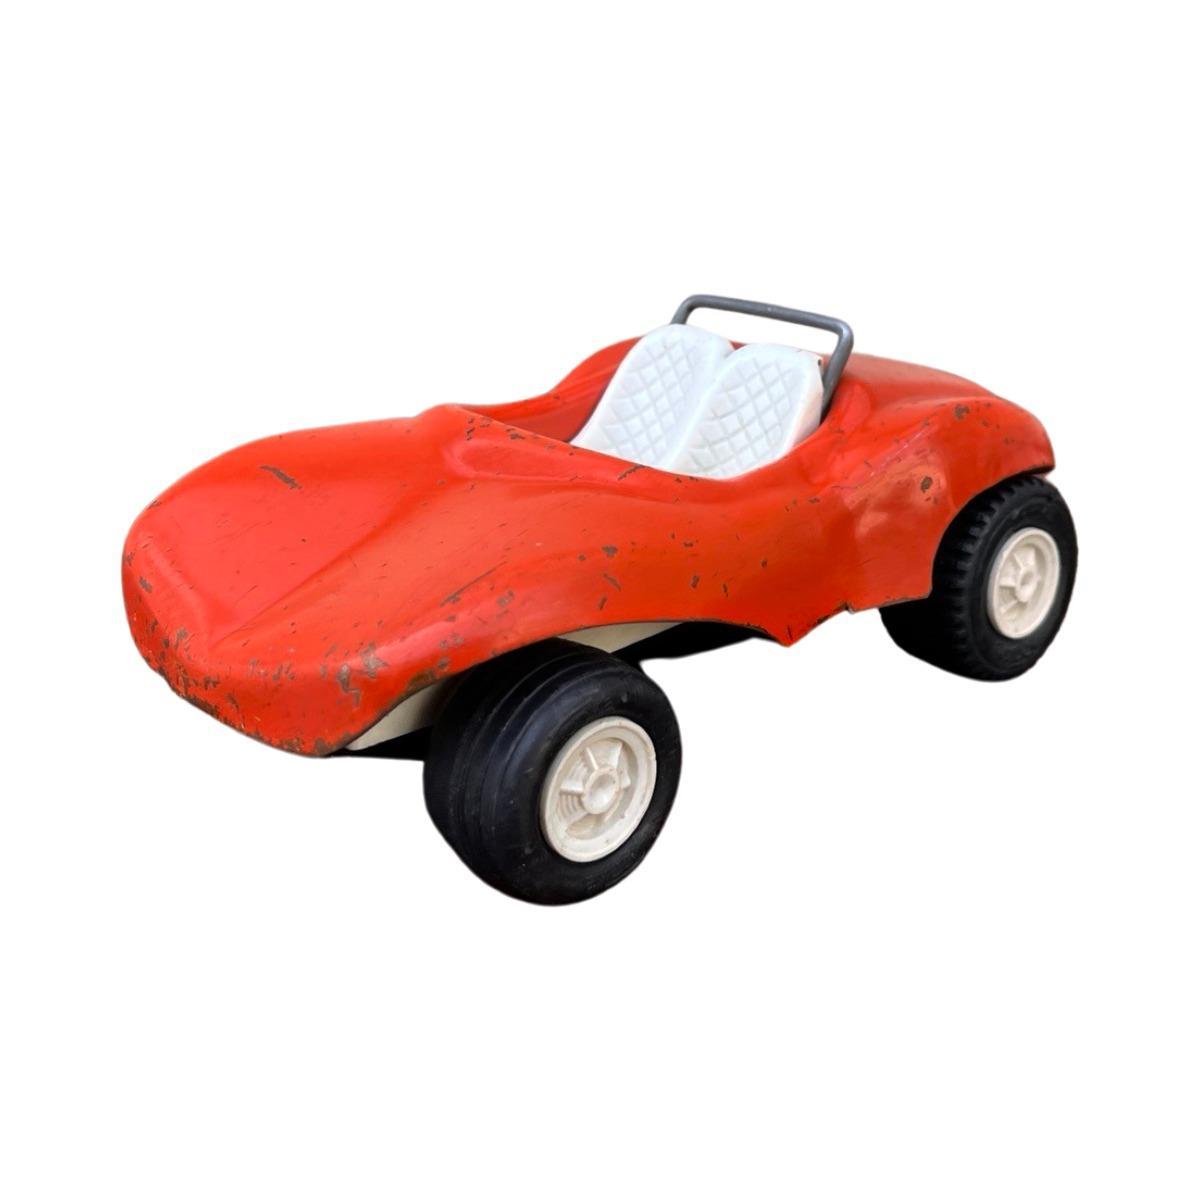 Model samochodu Tonka, Beach Buggy, 1975, czerwony, skala ok. 1:18 5 Full Screen